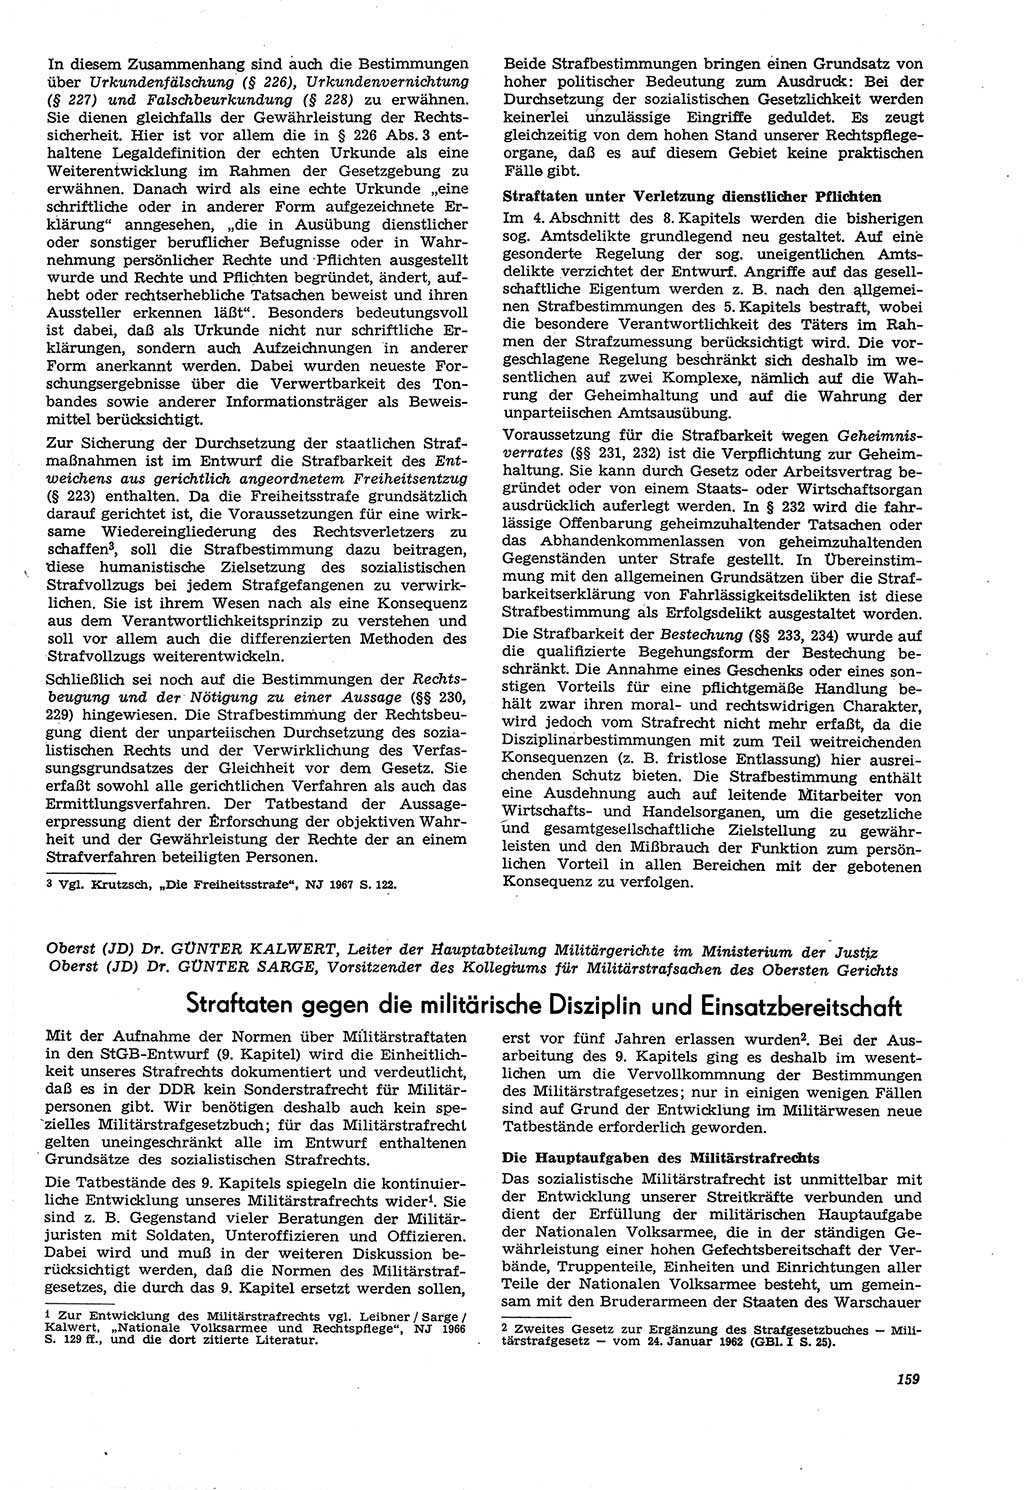 Neue Justiz (NJ), Zeitschrift für Recht und Rechtswissenschaft [Deutsche Demokratische Republik (DDR)], 21. Jahrgang 1967, Seite 159 (NJ DDR 1967, S. 159)